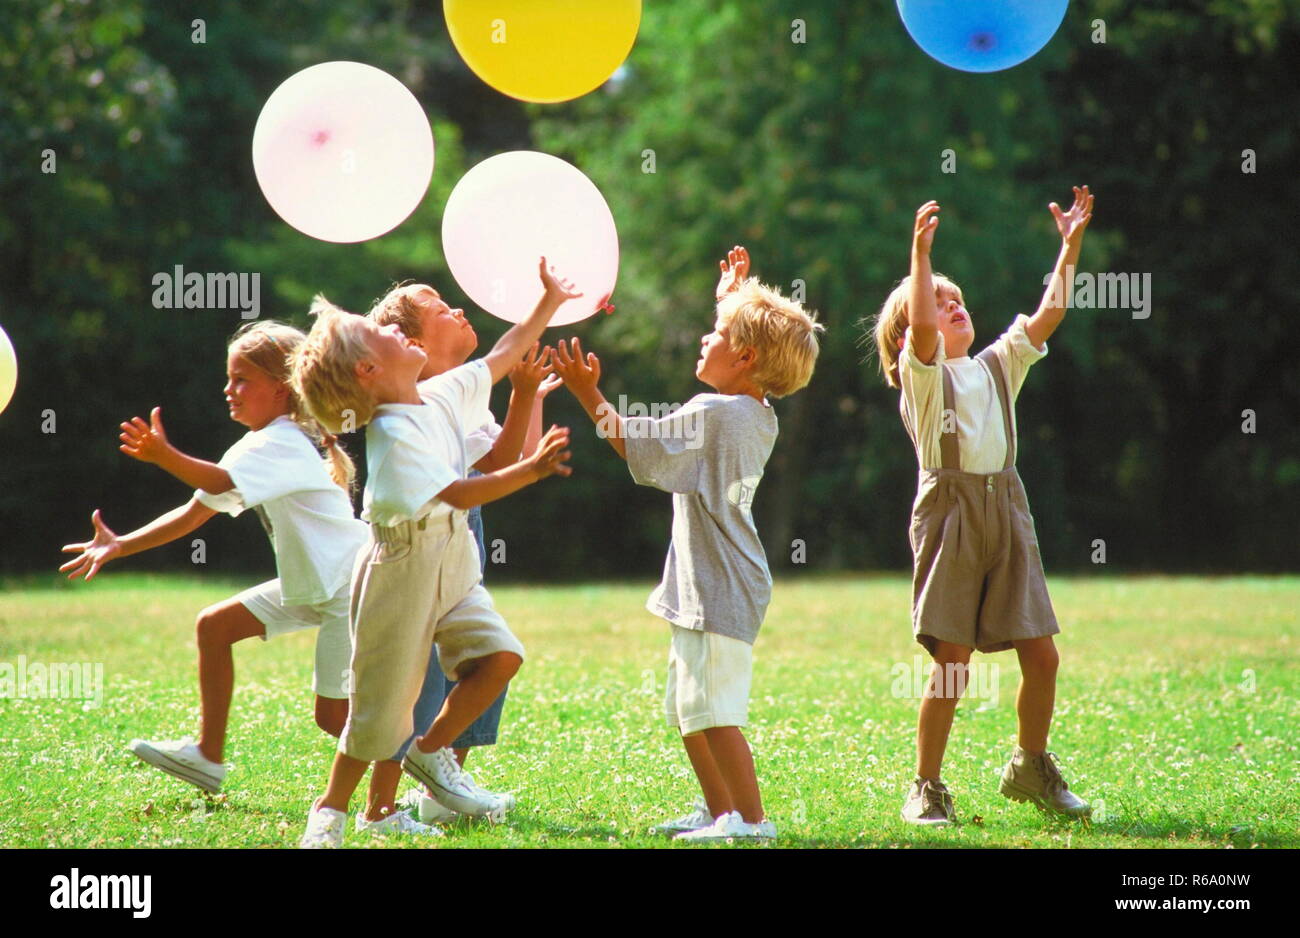 5 Kinder spielen auf einer mit Gaensebluemchen uebersaeaten Wiese im Park mit bunten Luftballons Foto Stock